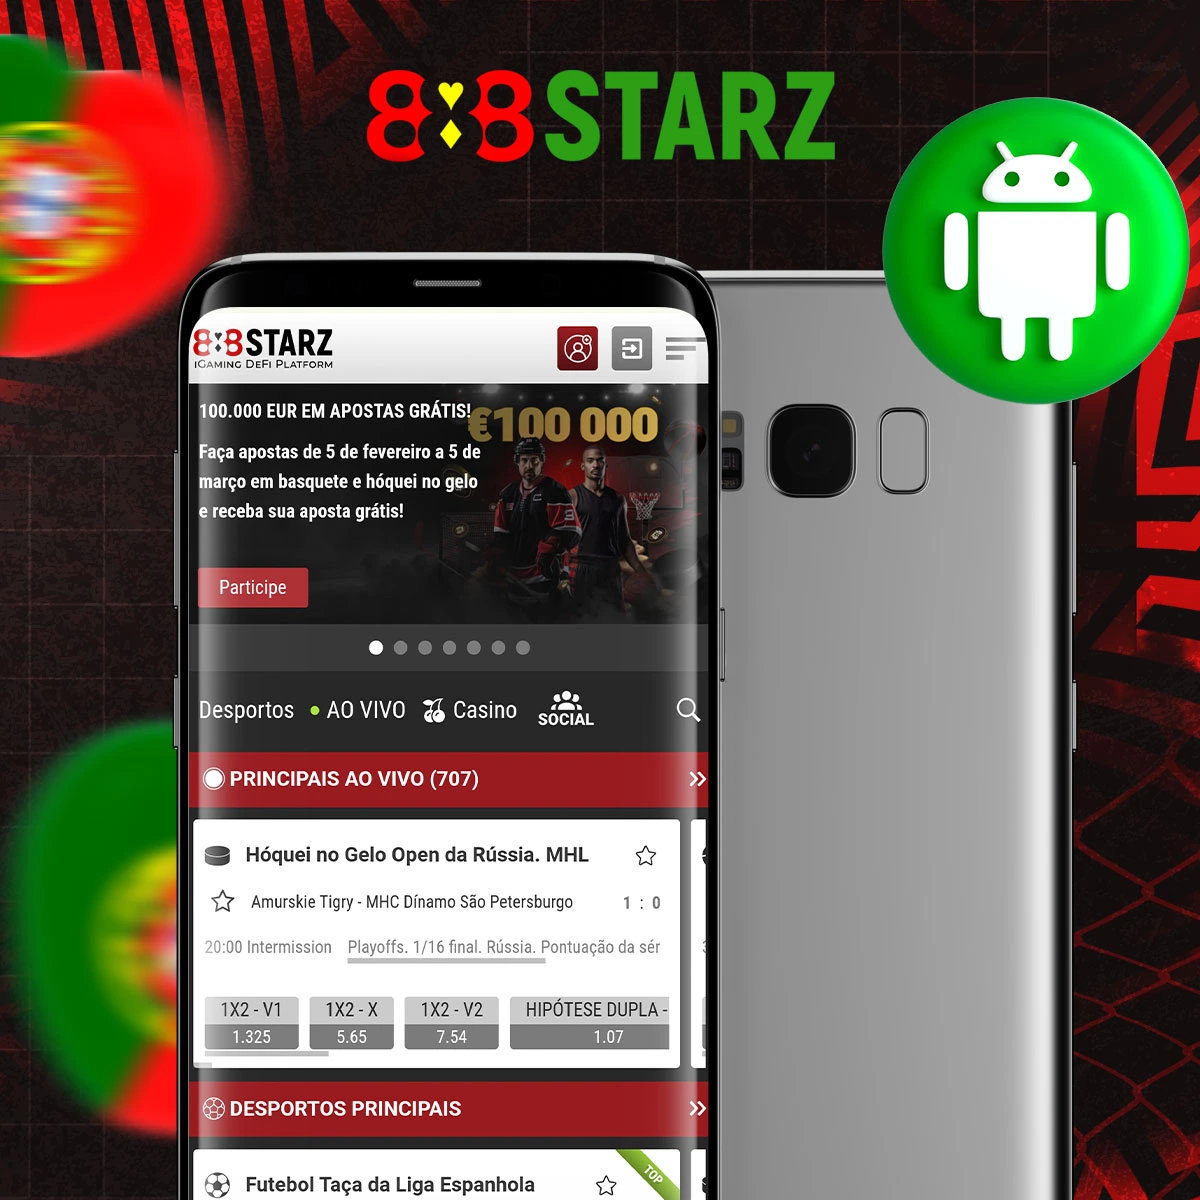 Como é que instalo a aplicação móvel 888Starz no Android?